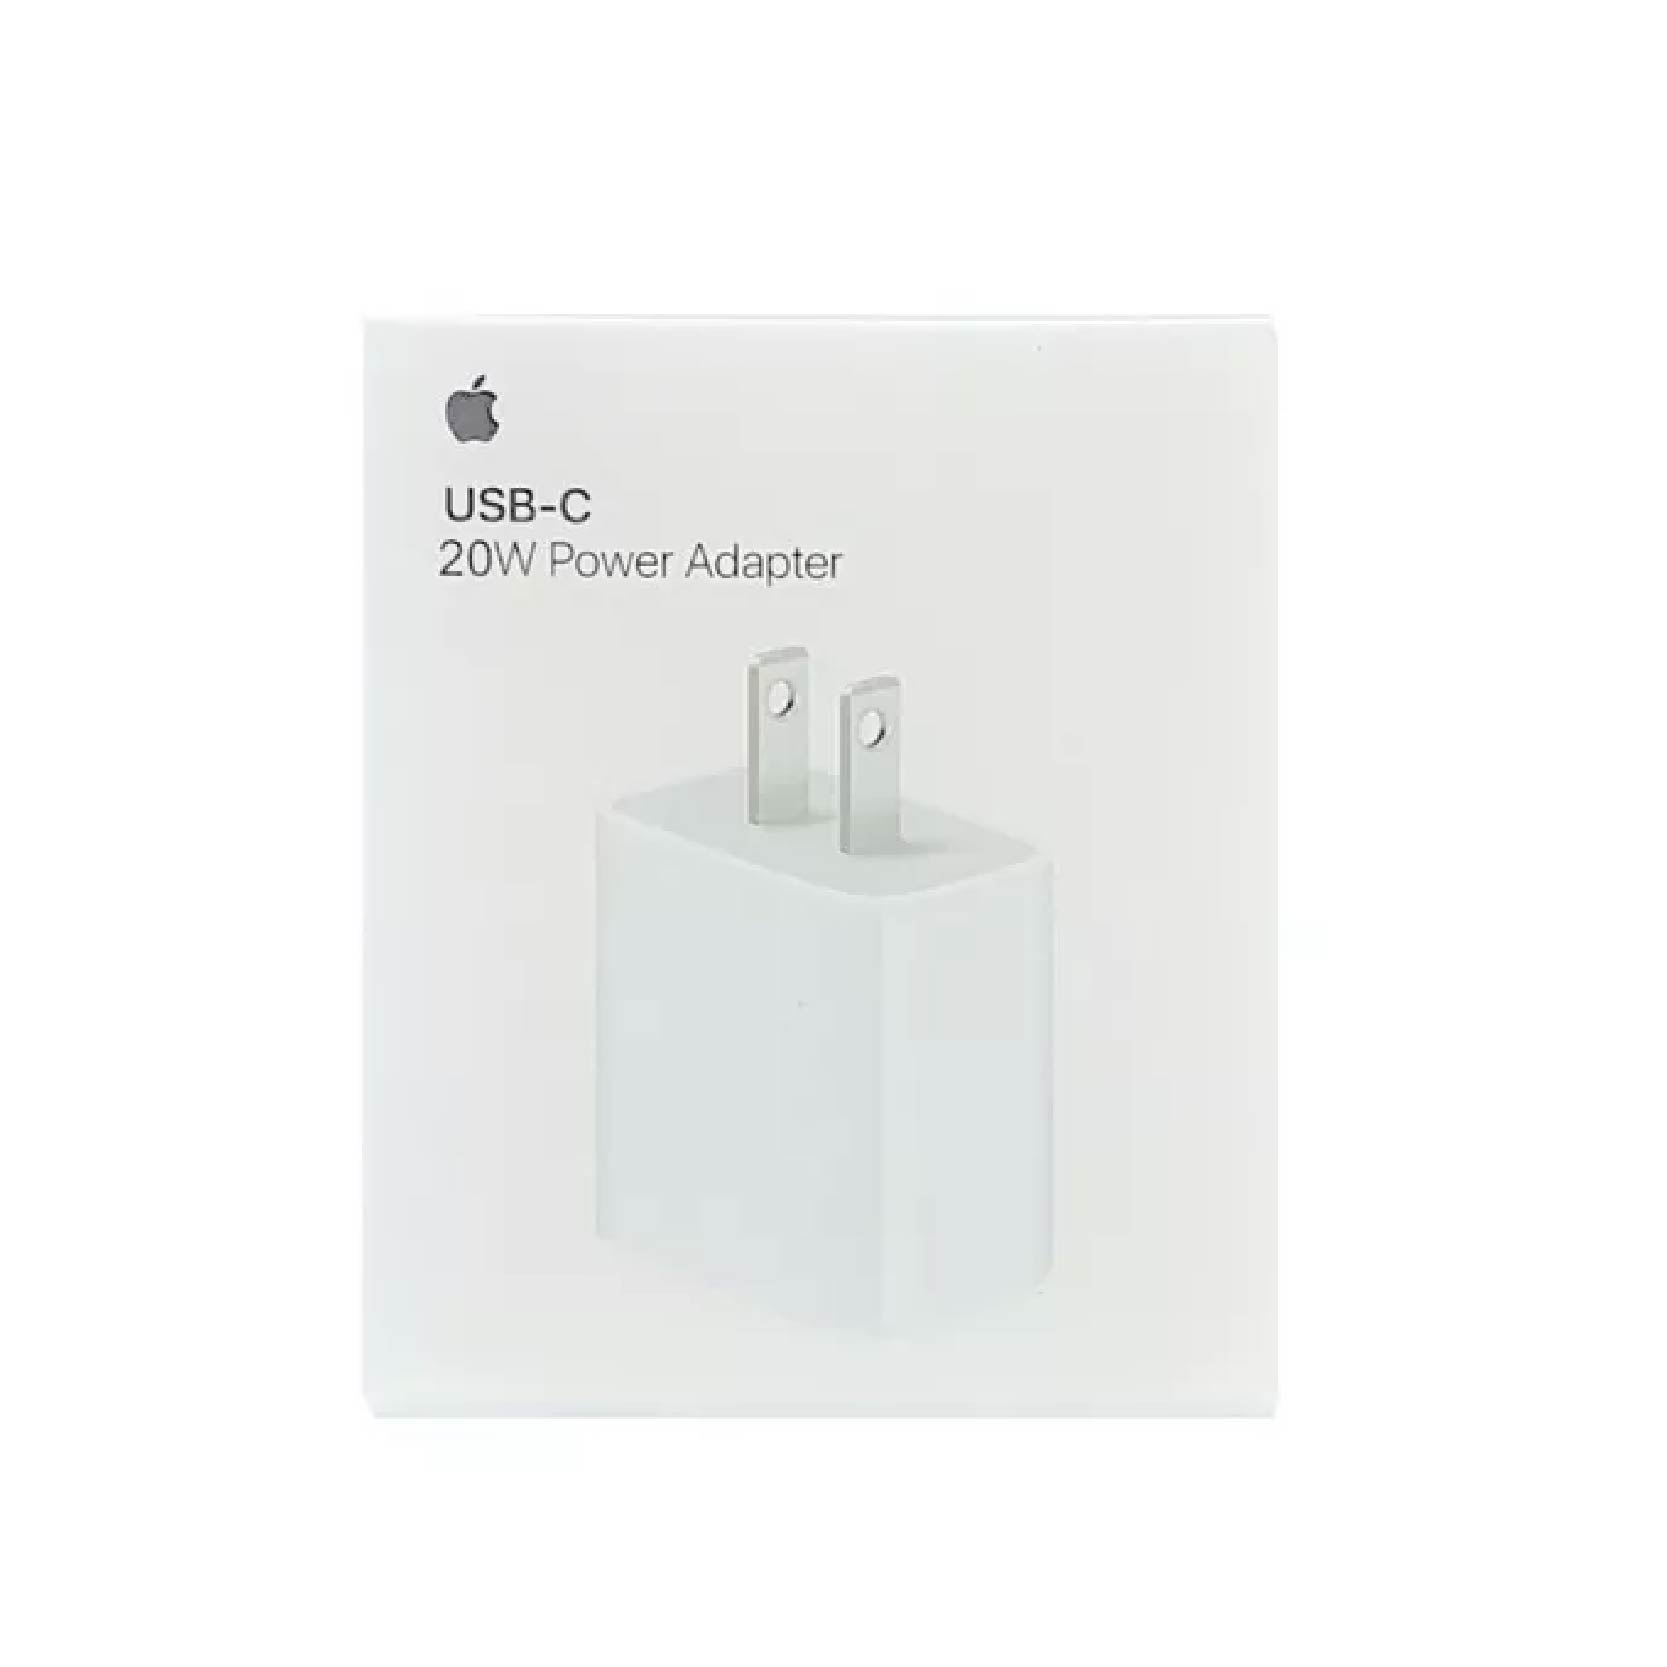 20W USB-C Power Adapter - Adaptador de corriente USB-C de 20 W